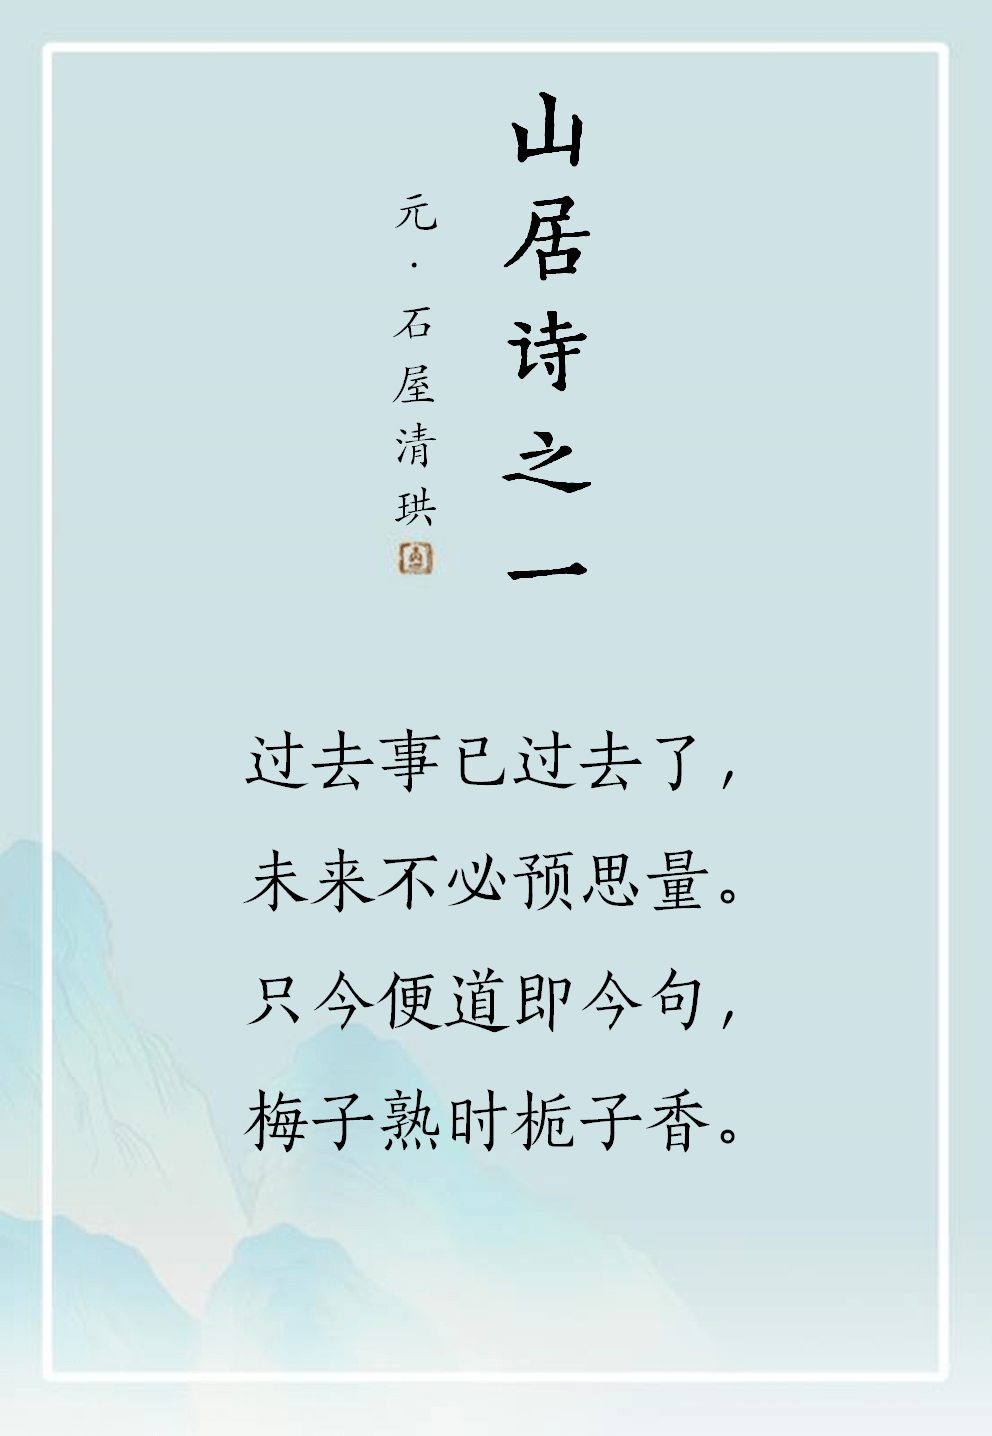 禅诗欣赏丨山居诗_手机搜狐网